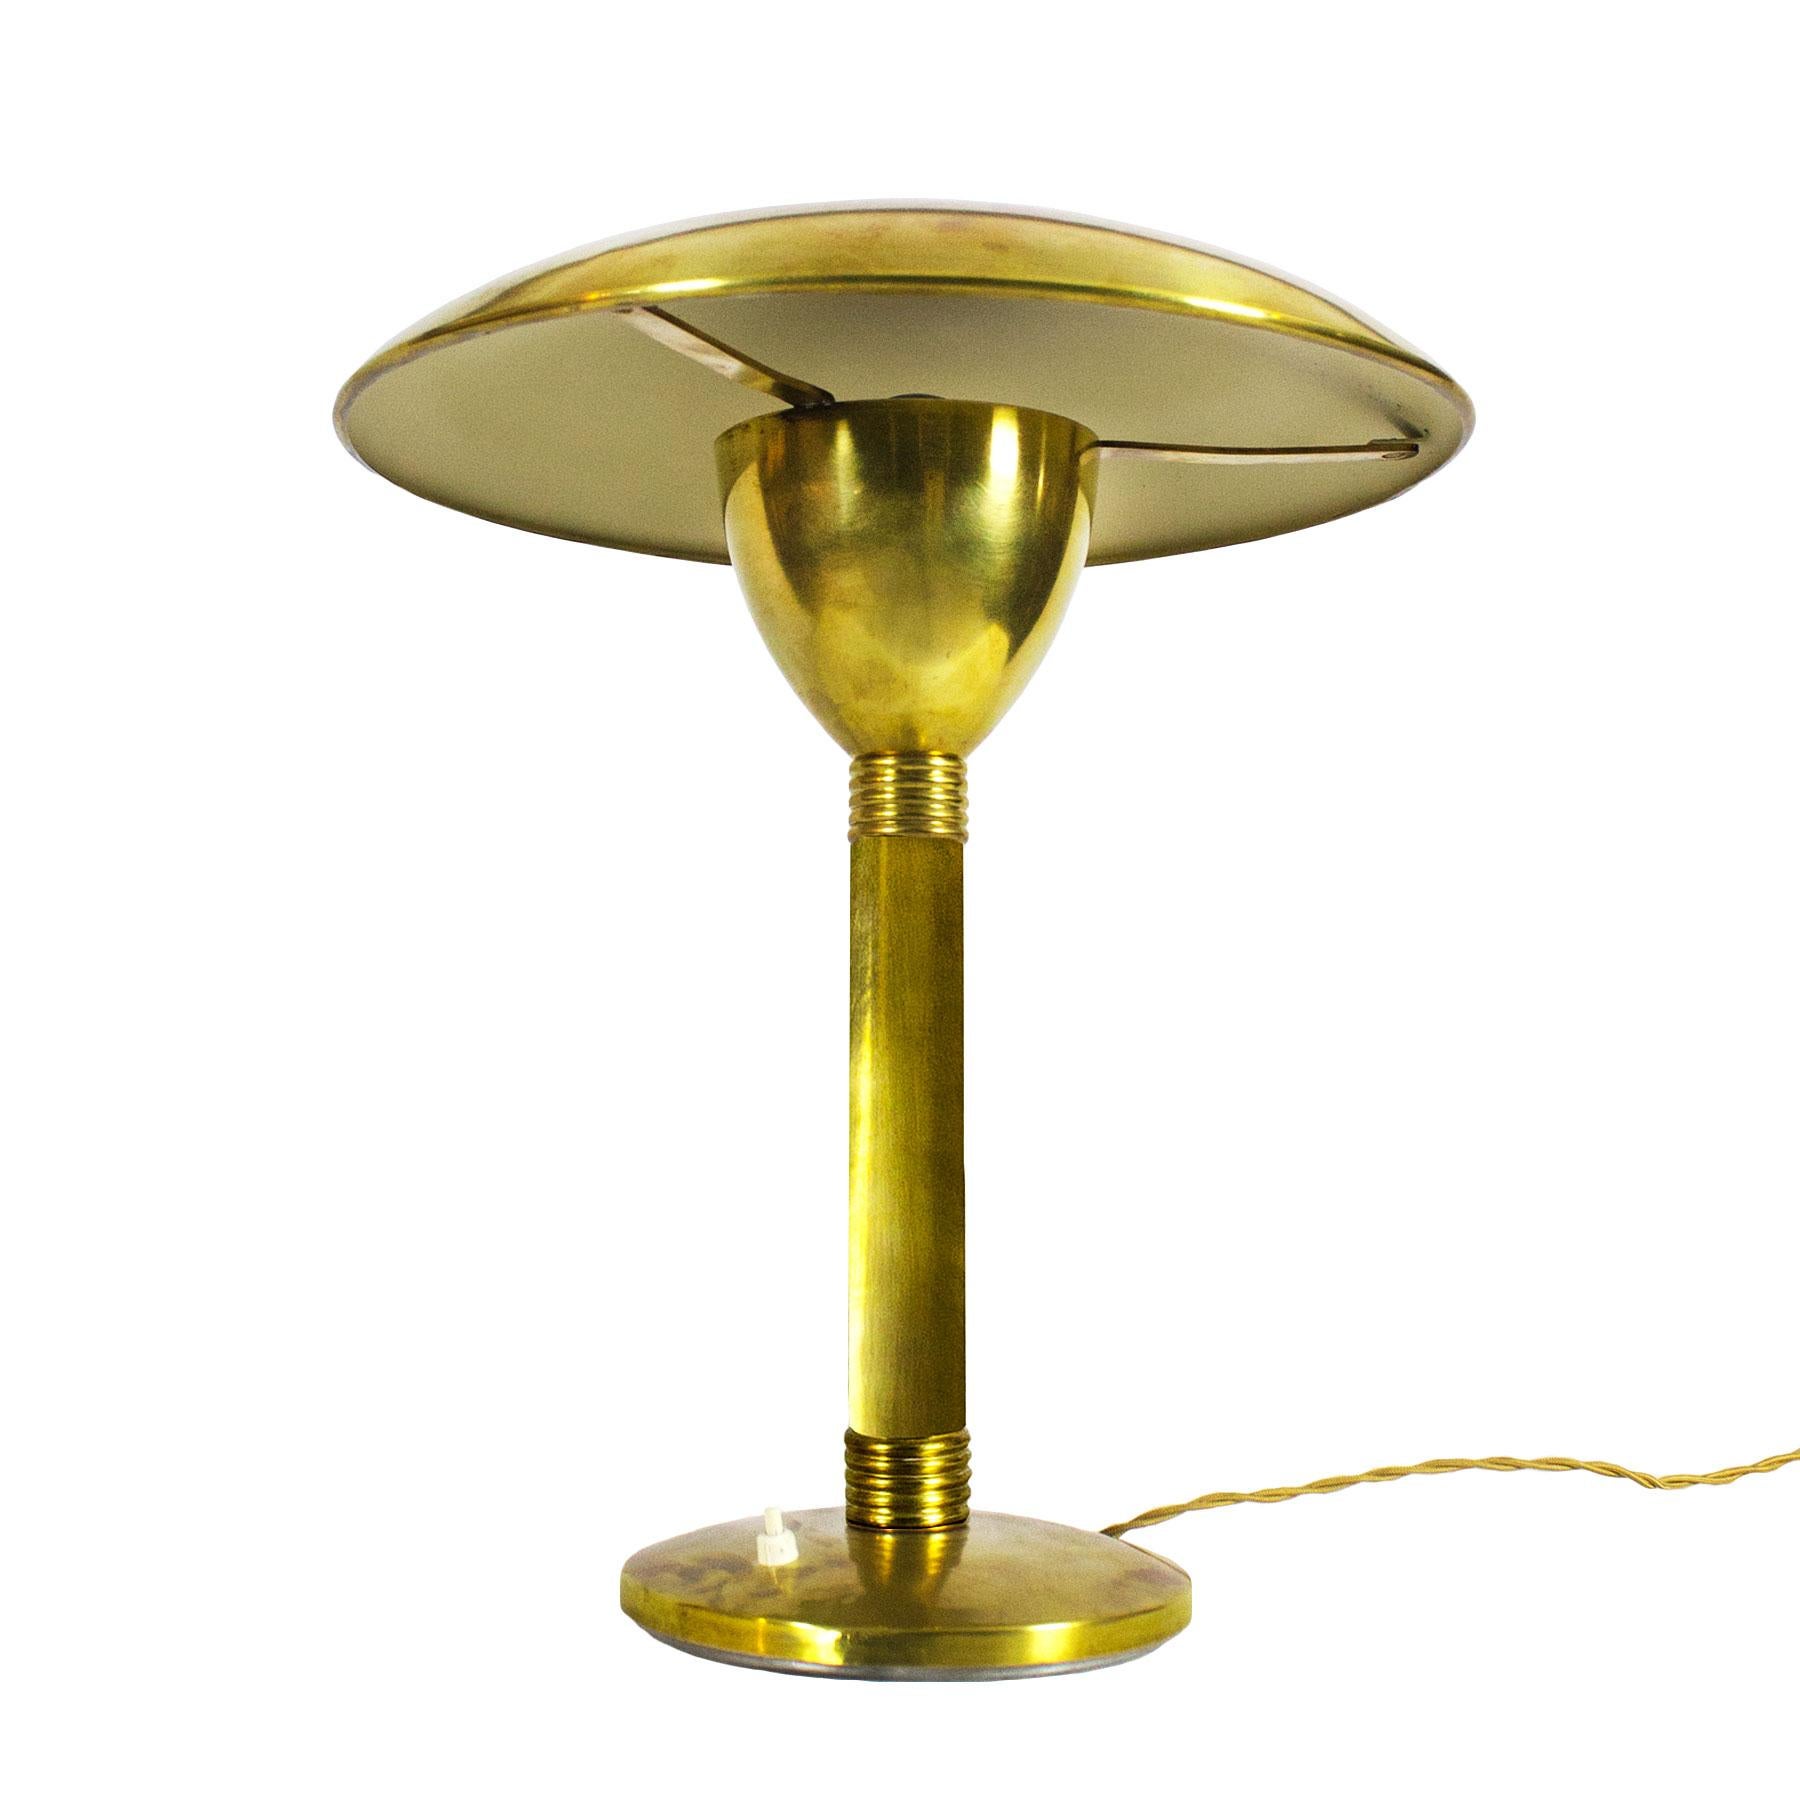 Große Art Deco Tisch- oder Schreibtischlampe, poliertes Messing und elfenbeinfarbener Lack im Inneren des Lampenschirms.

Italien, um 1930.